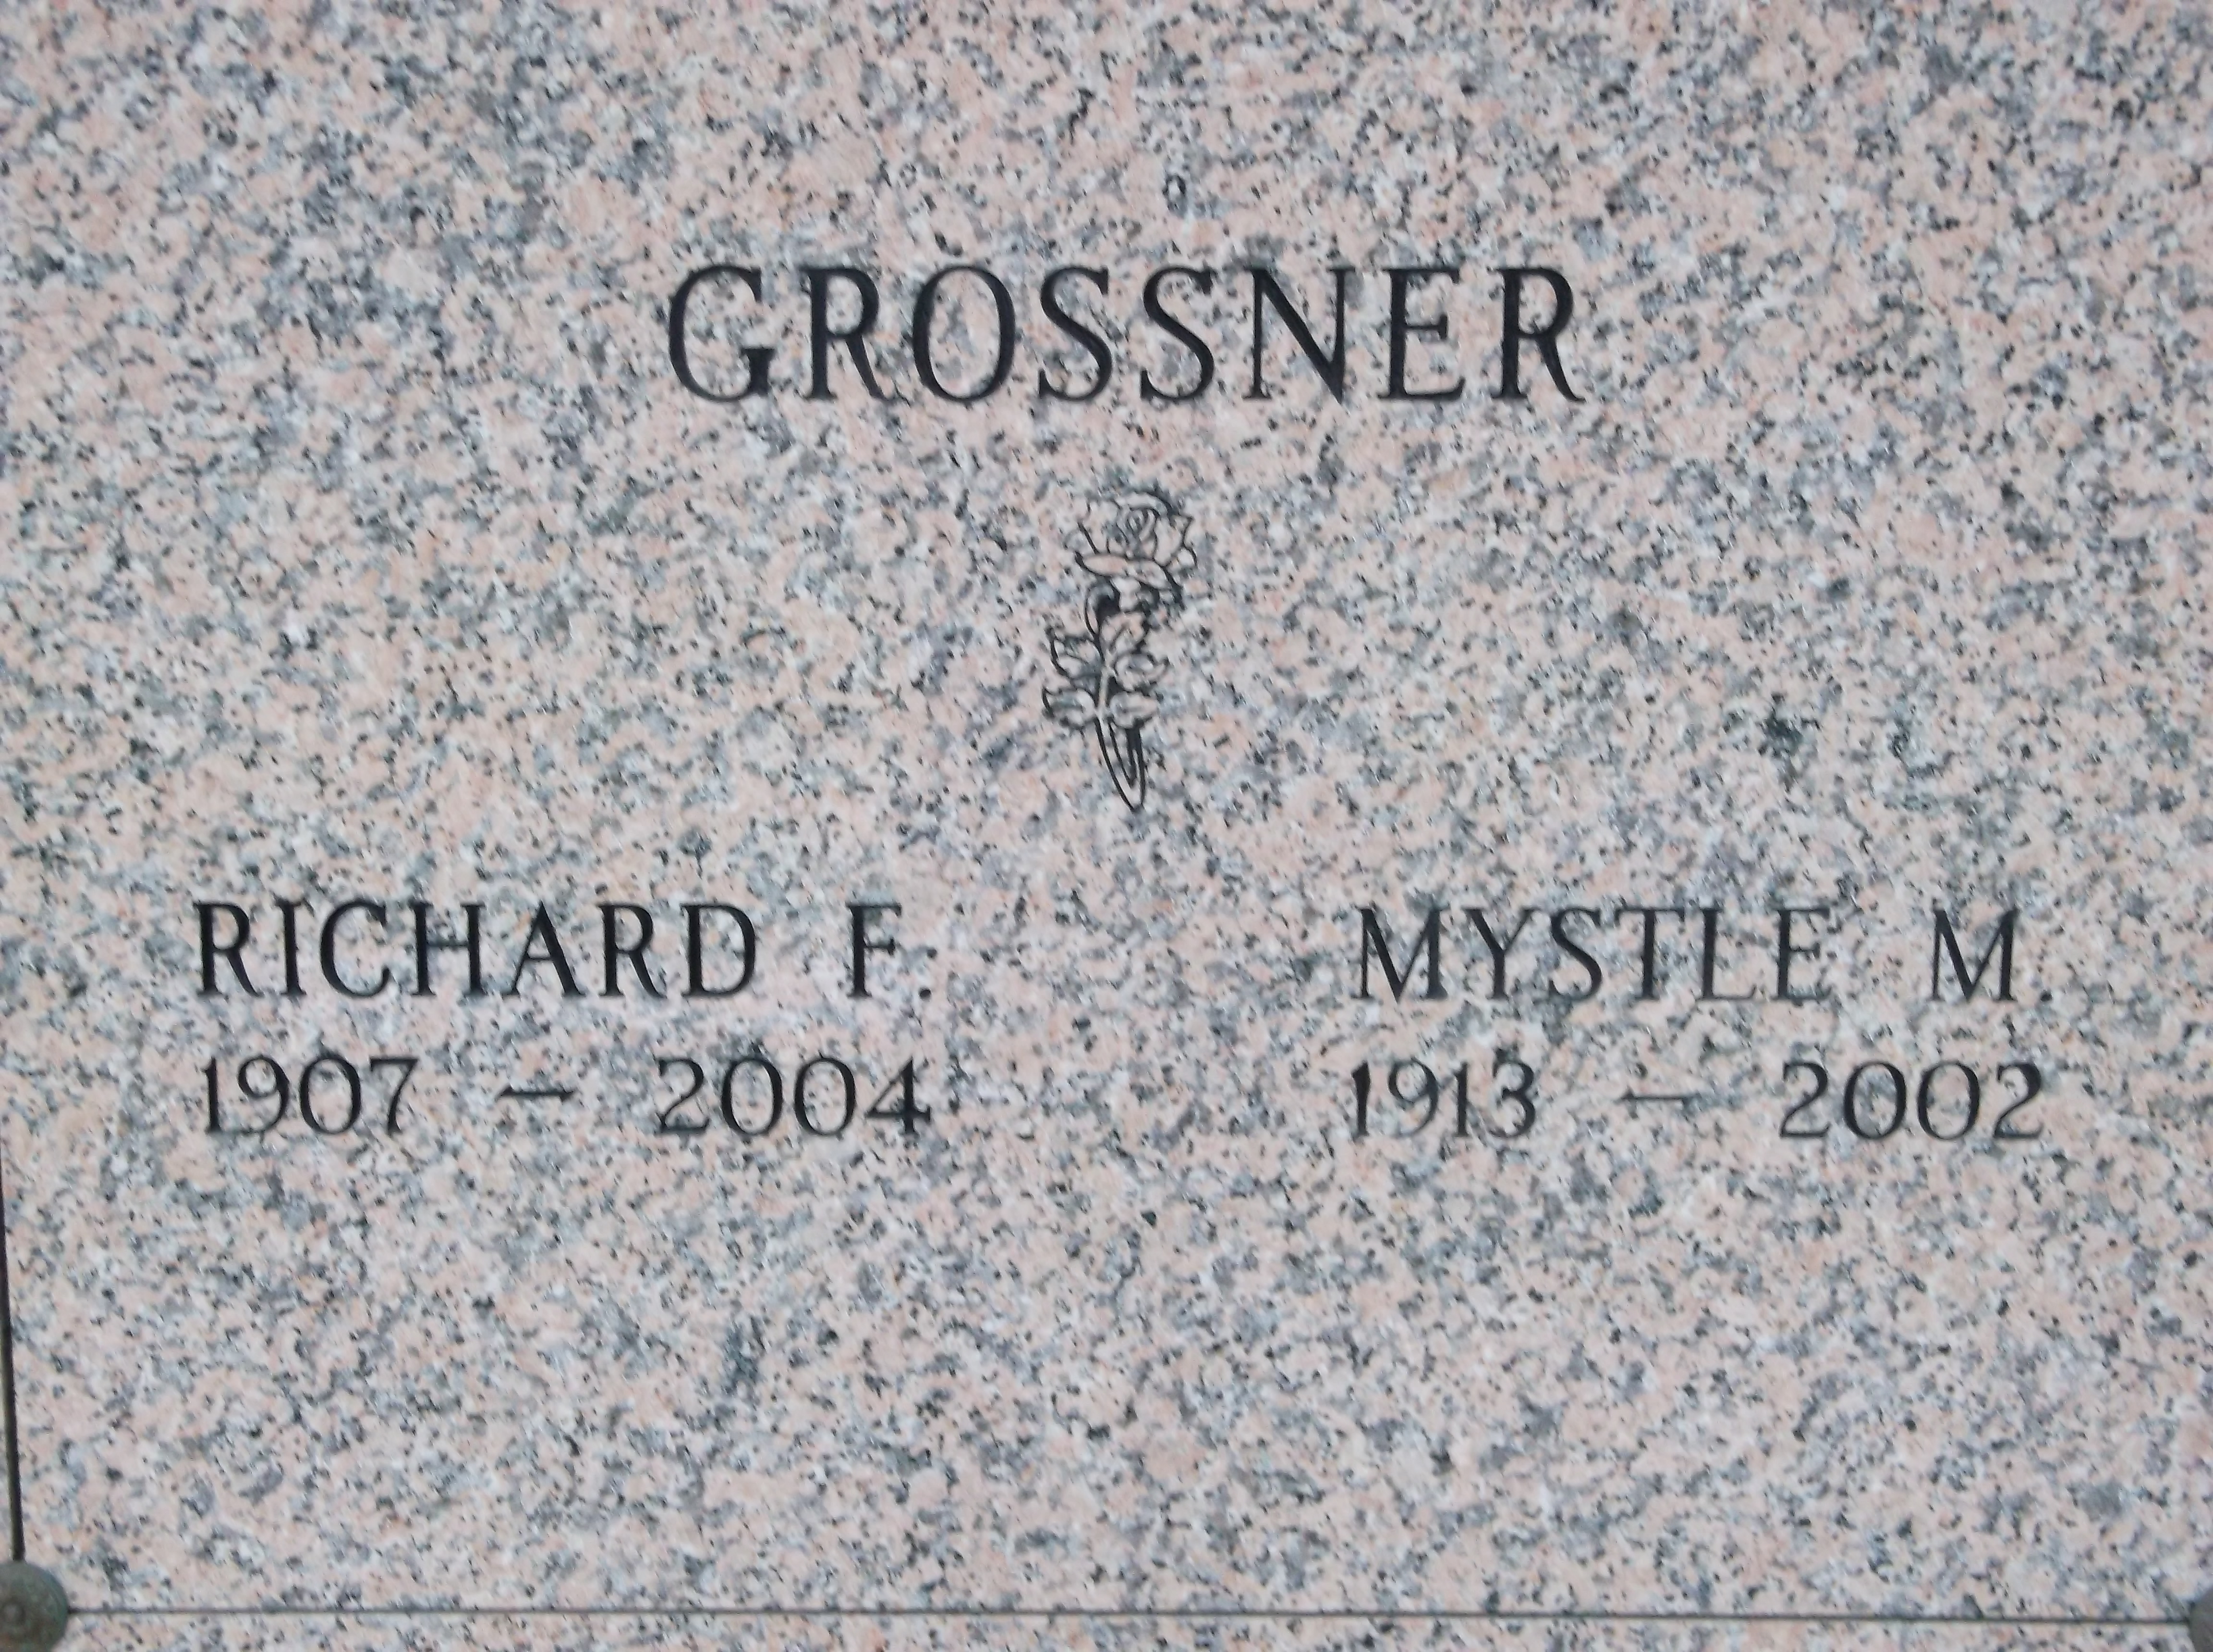 Richard F Grossner